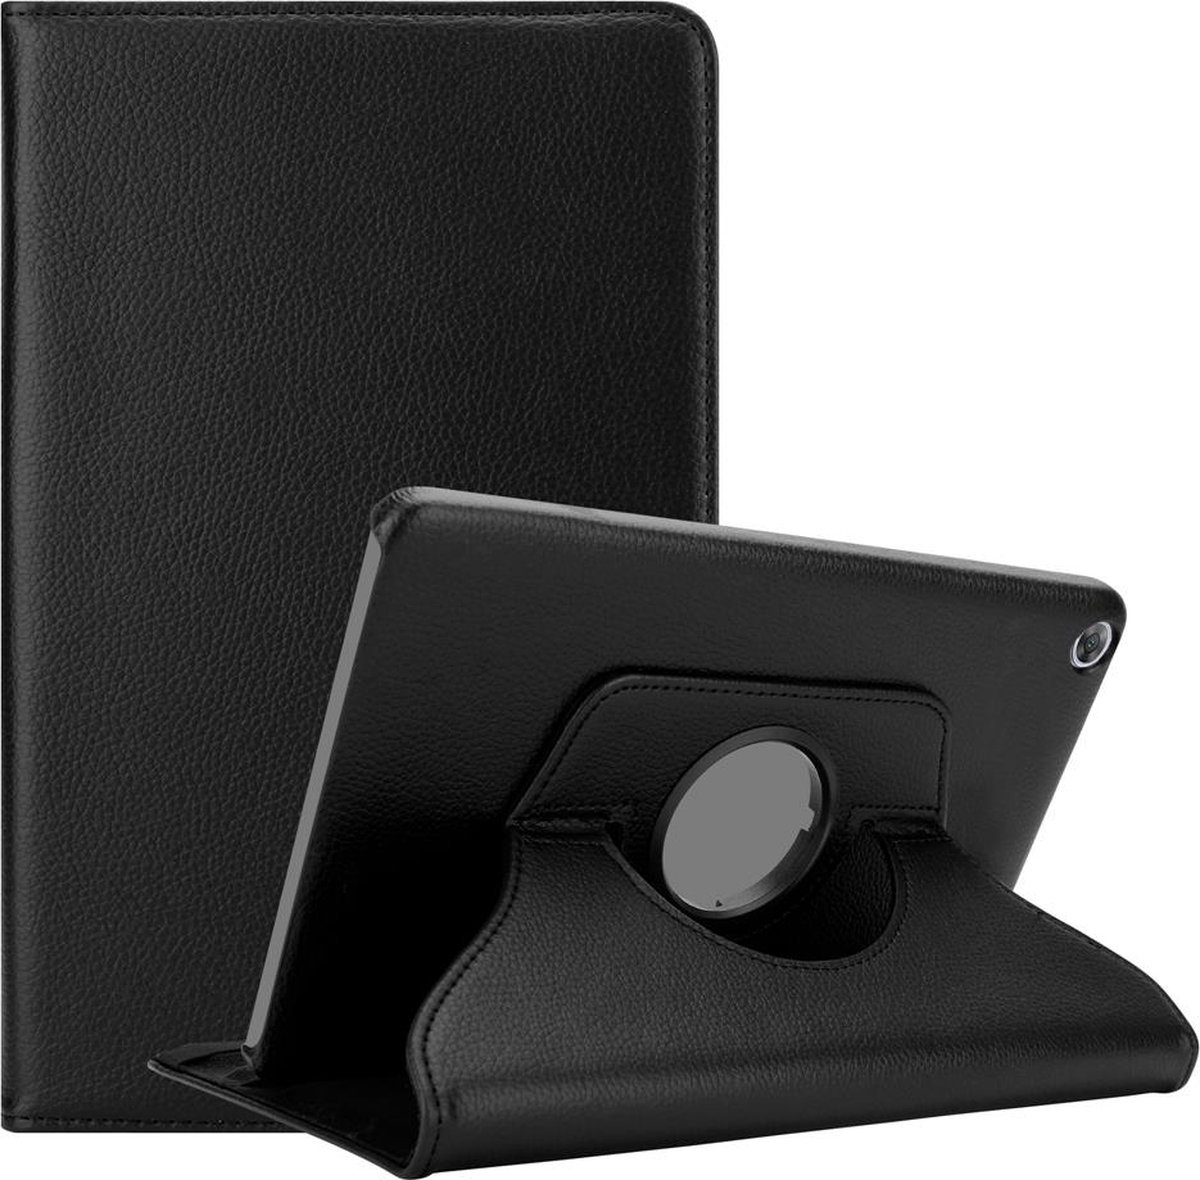 Cadorabo Tablet Hoesje voor Huawei MediaPad M5 8 (8.4 inch) in OUDERLING ZWART - Beschermhoes ZONDER auto Wake Up, met stand functie en elastische band sluiting Book Case Cover Etui